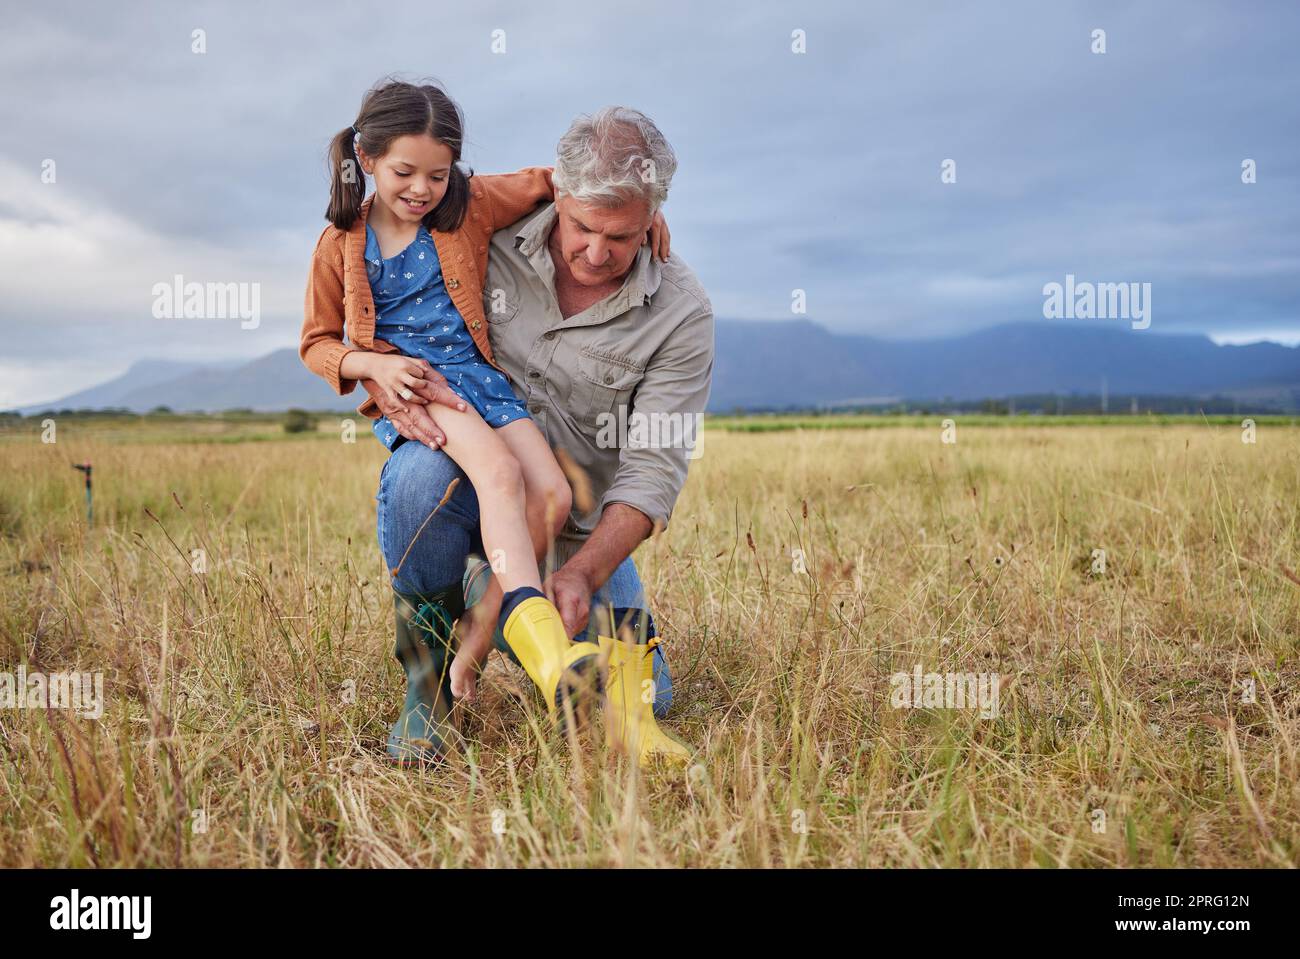 Felice legame con la famiglia in fattoria nonni e ragazze che si divertono nella natura, preparatevi a camminare insieme. Bambino sorridente e nonno premuroso che esplora l'aria aperta, mentre ti godi una passeggiata in campagna o nel campo Foto Stock